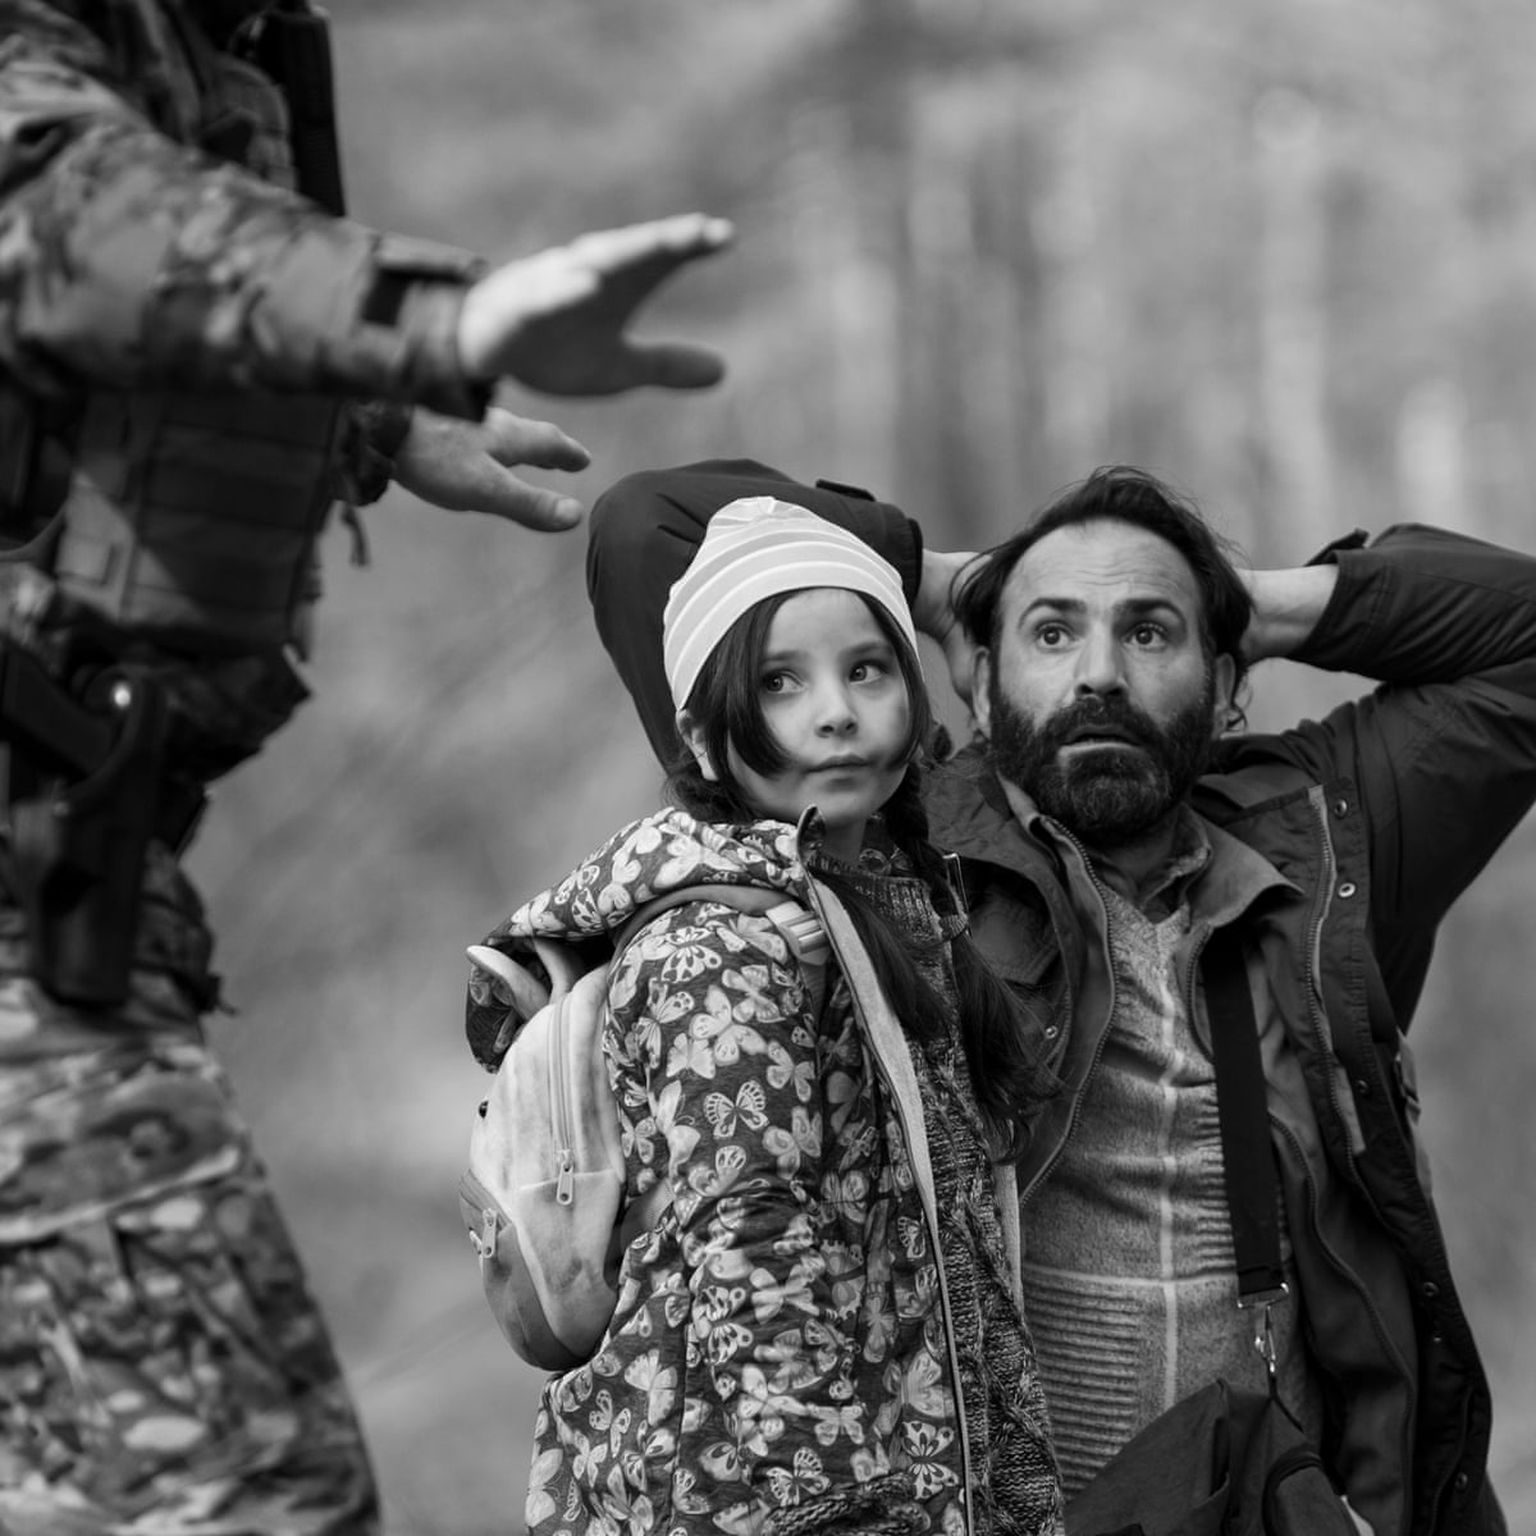 Mustvalge draama «Roheline piir» räägib tõestisündinud loo Valgevenest tulnud põgenikest, kes jäid Euroopa Liidu idapiirile lõksu.